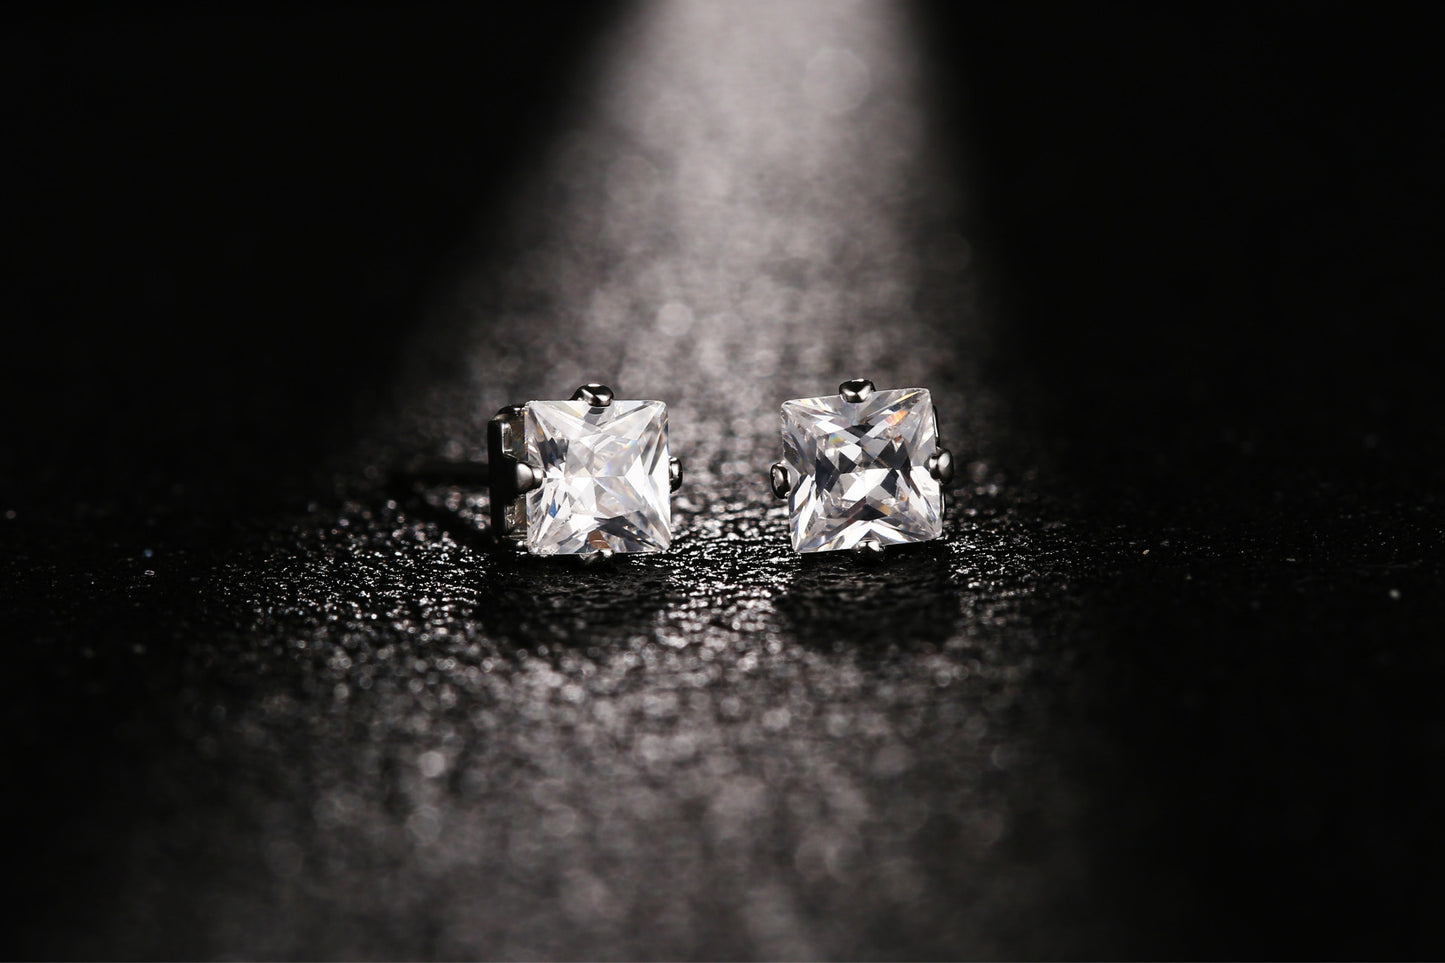 Cubic Zirconia Earring Crown Diamond Stud Earrings